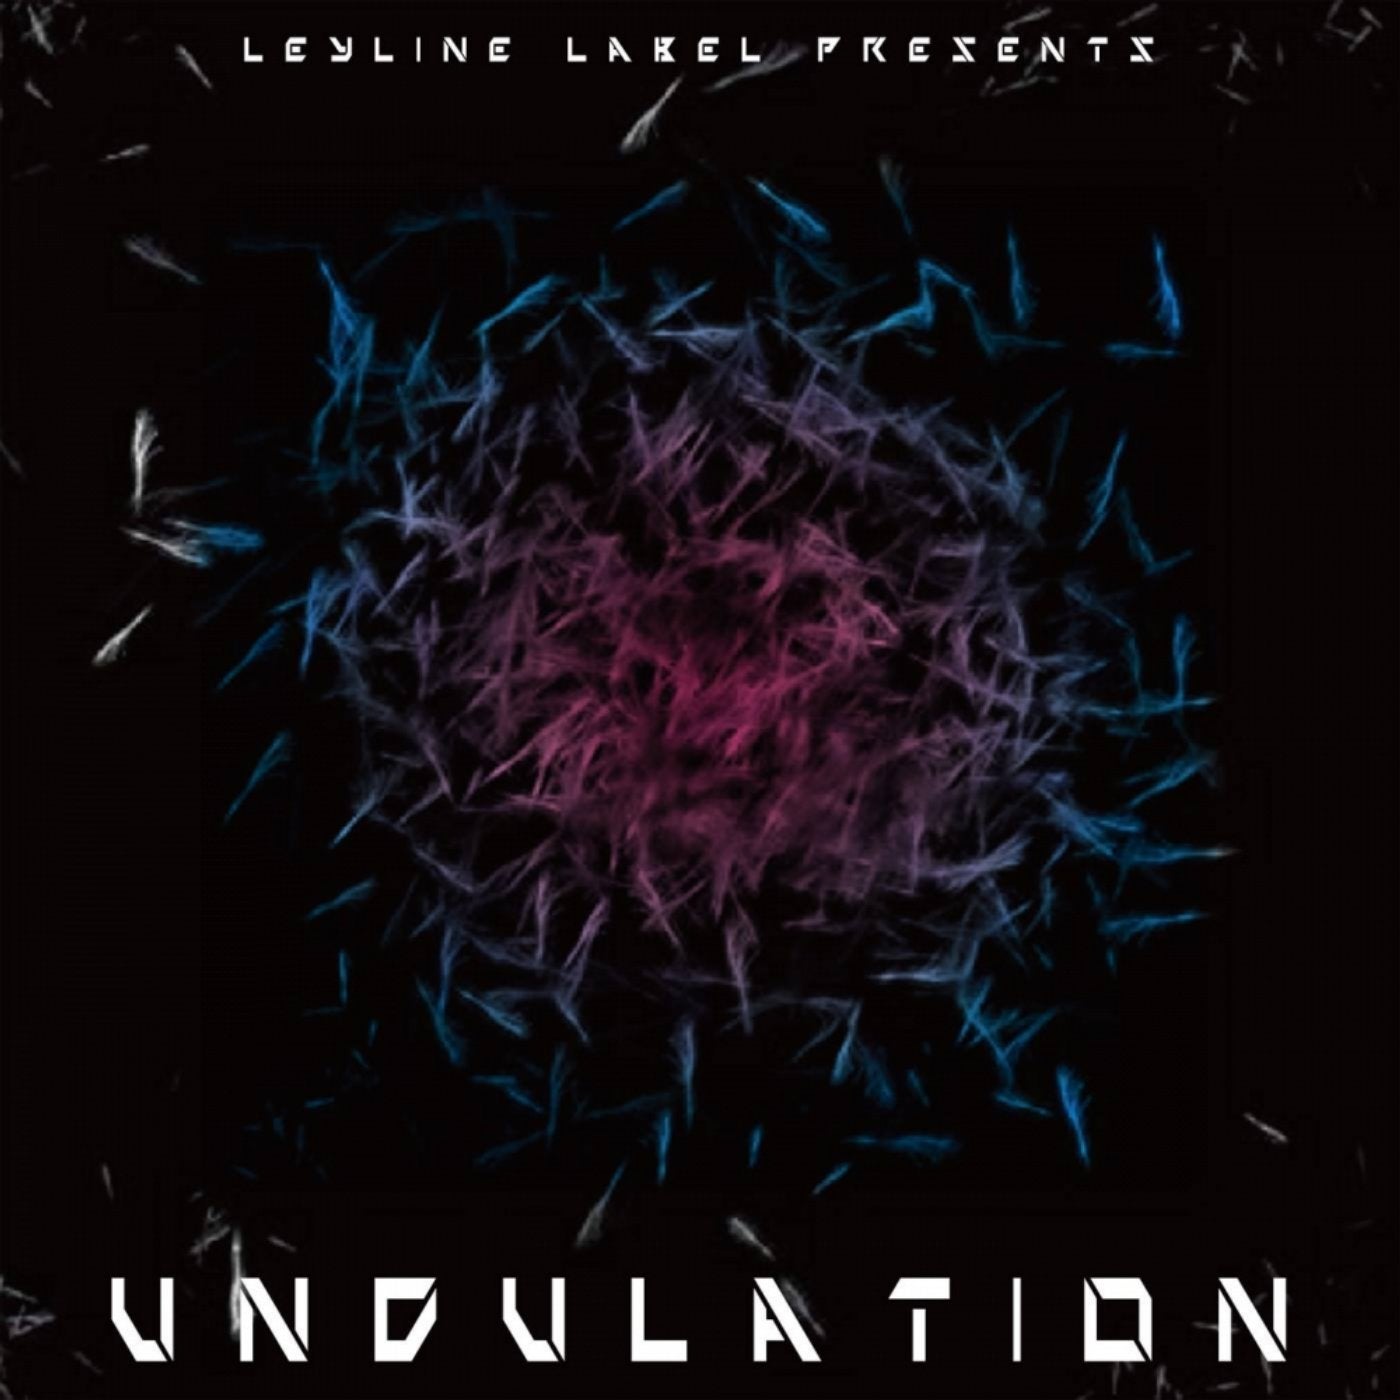 Leyline Label presents Undulation